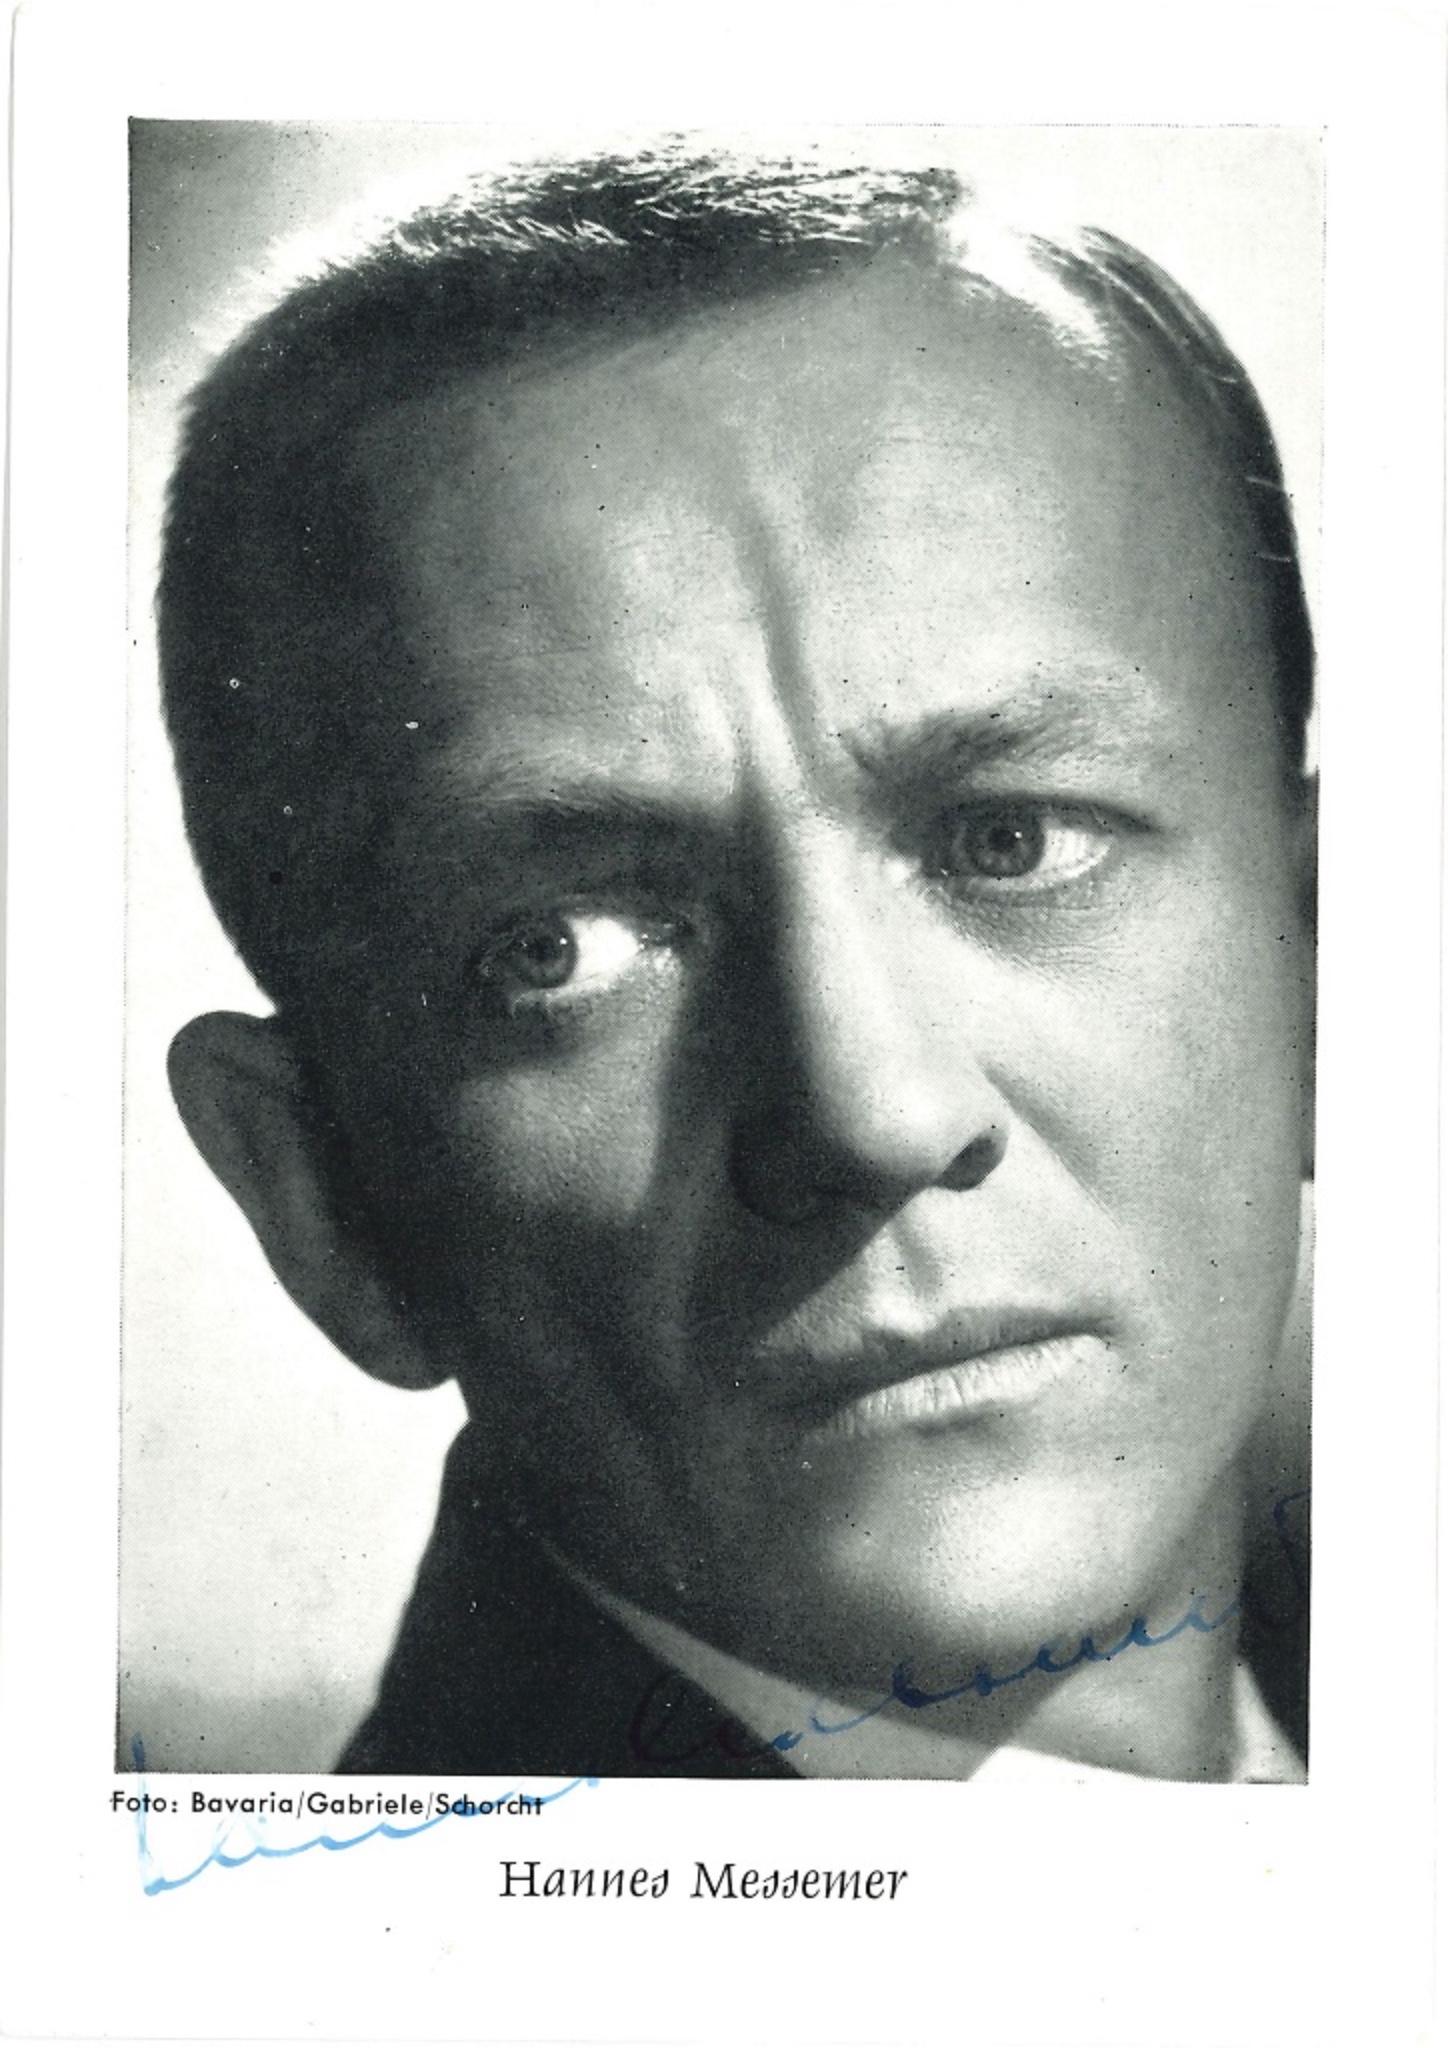 Unknown Portrait Photograph - Hannes Messemer's Autographed Portrait - 1960s